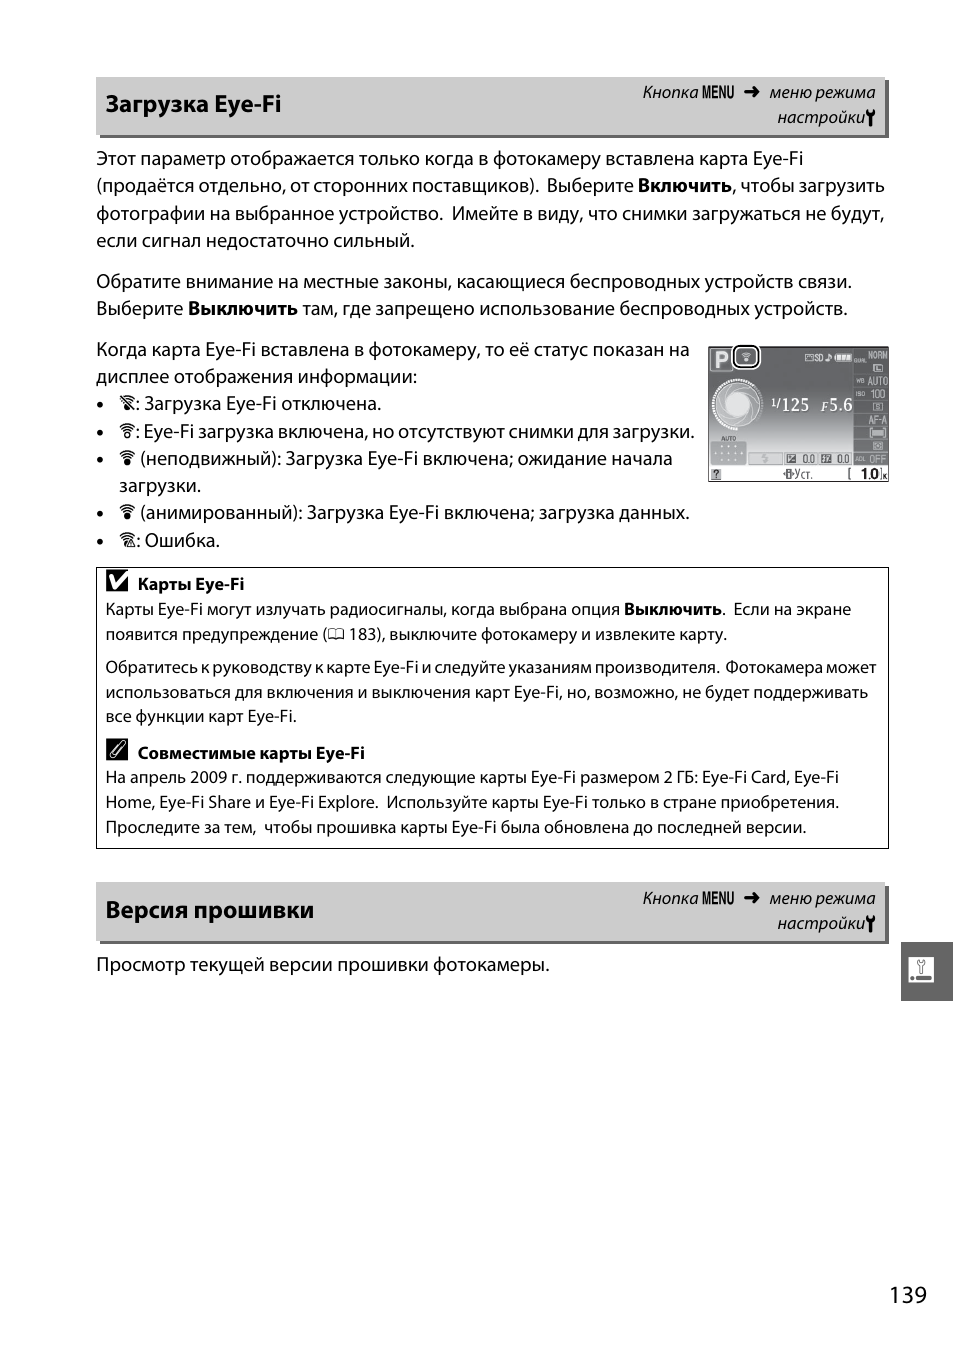 Загрузка eye-fi, Версия прошивки | Инструкция по эксплуатации Nikon D3000 | Страница 157 / 216